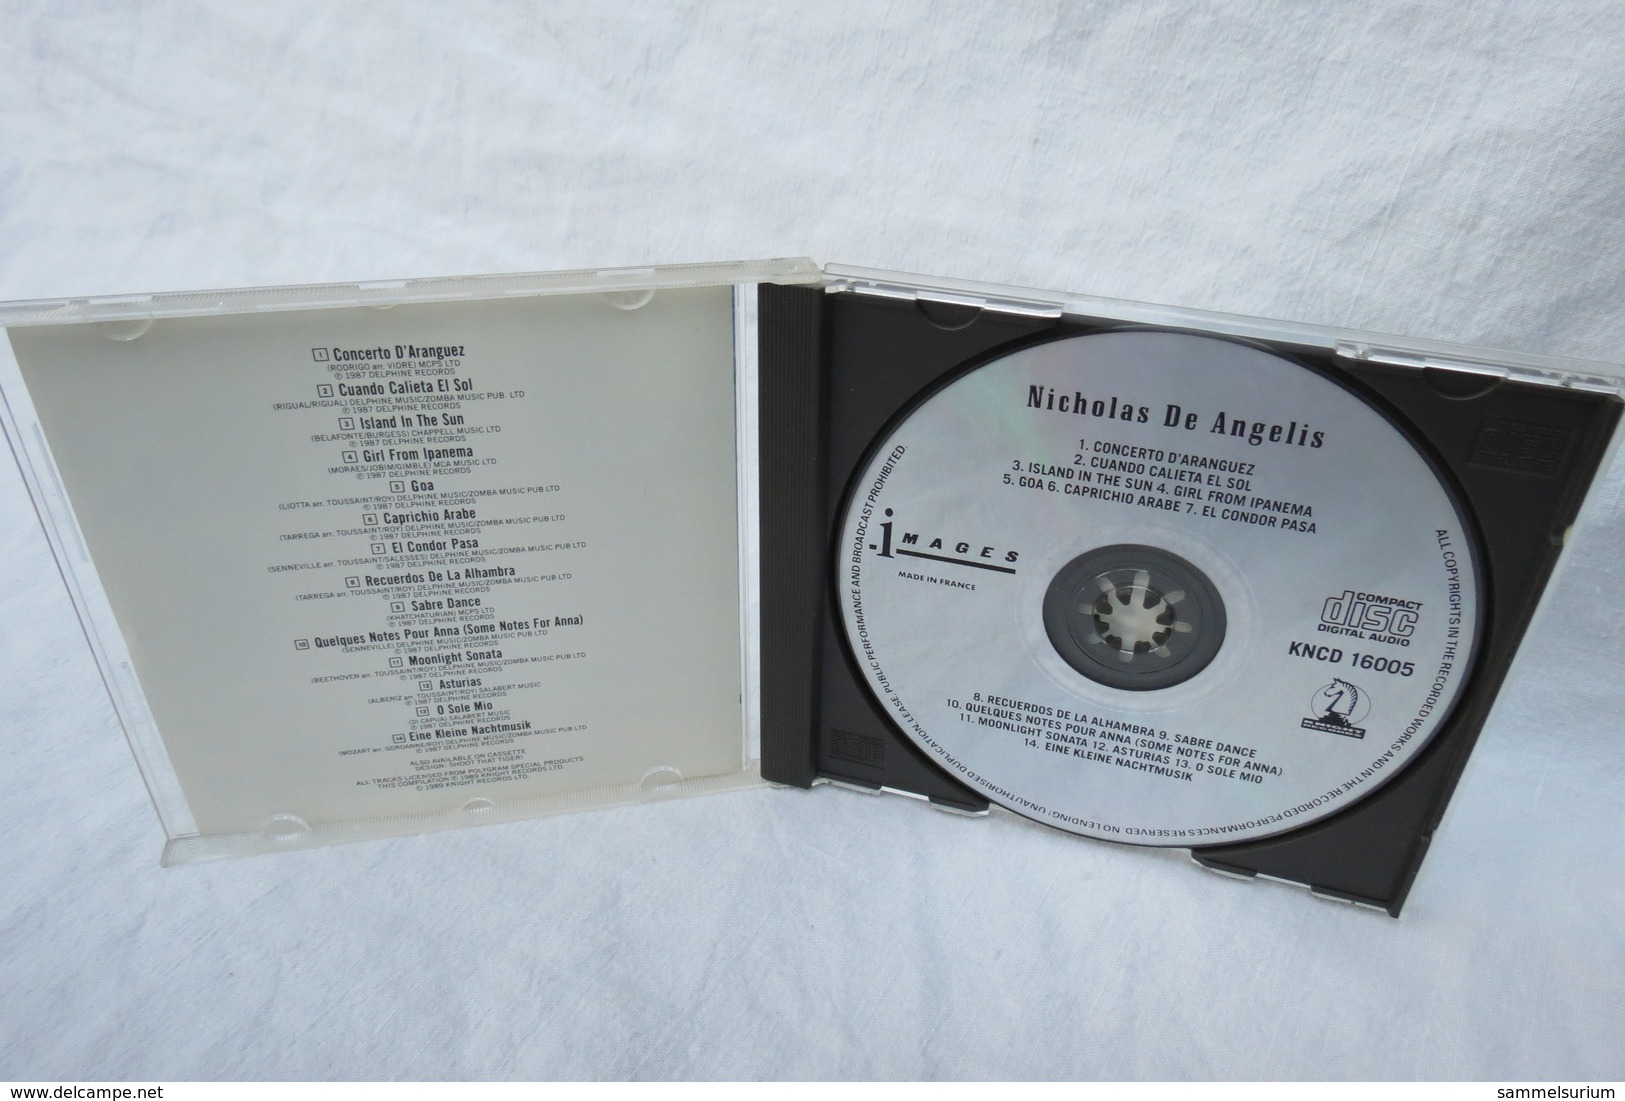 CD "Nicholas De Angelis" Images - Strumentali